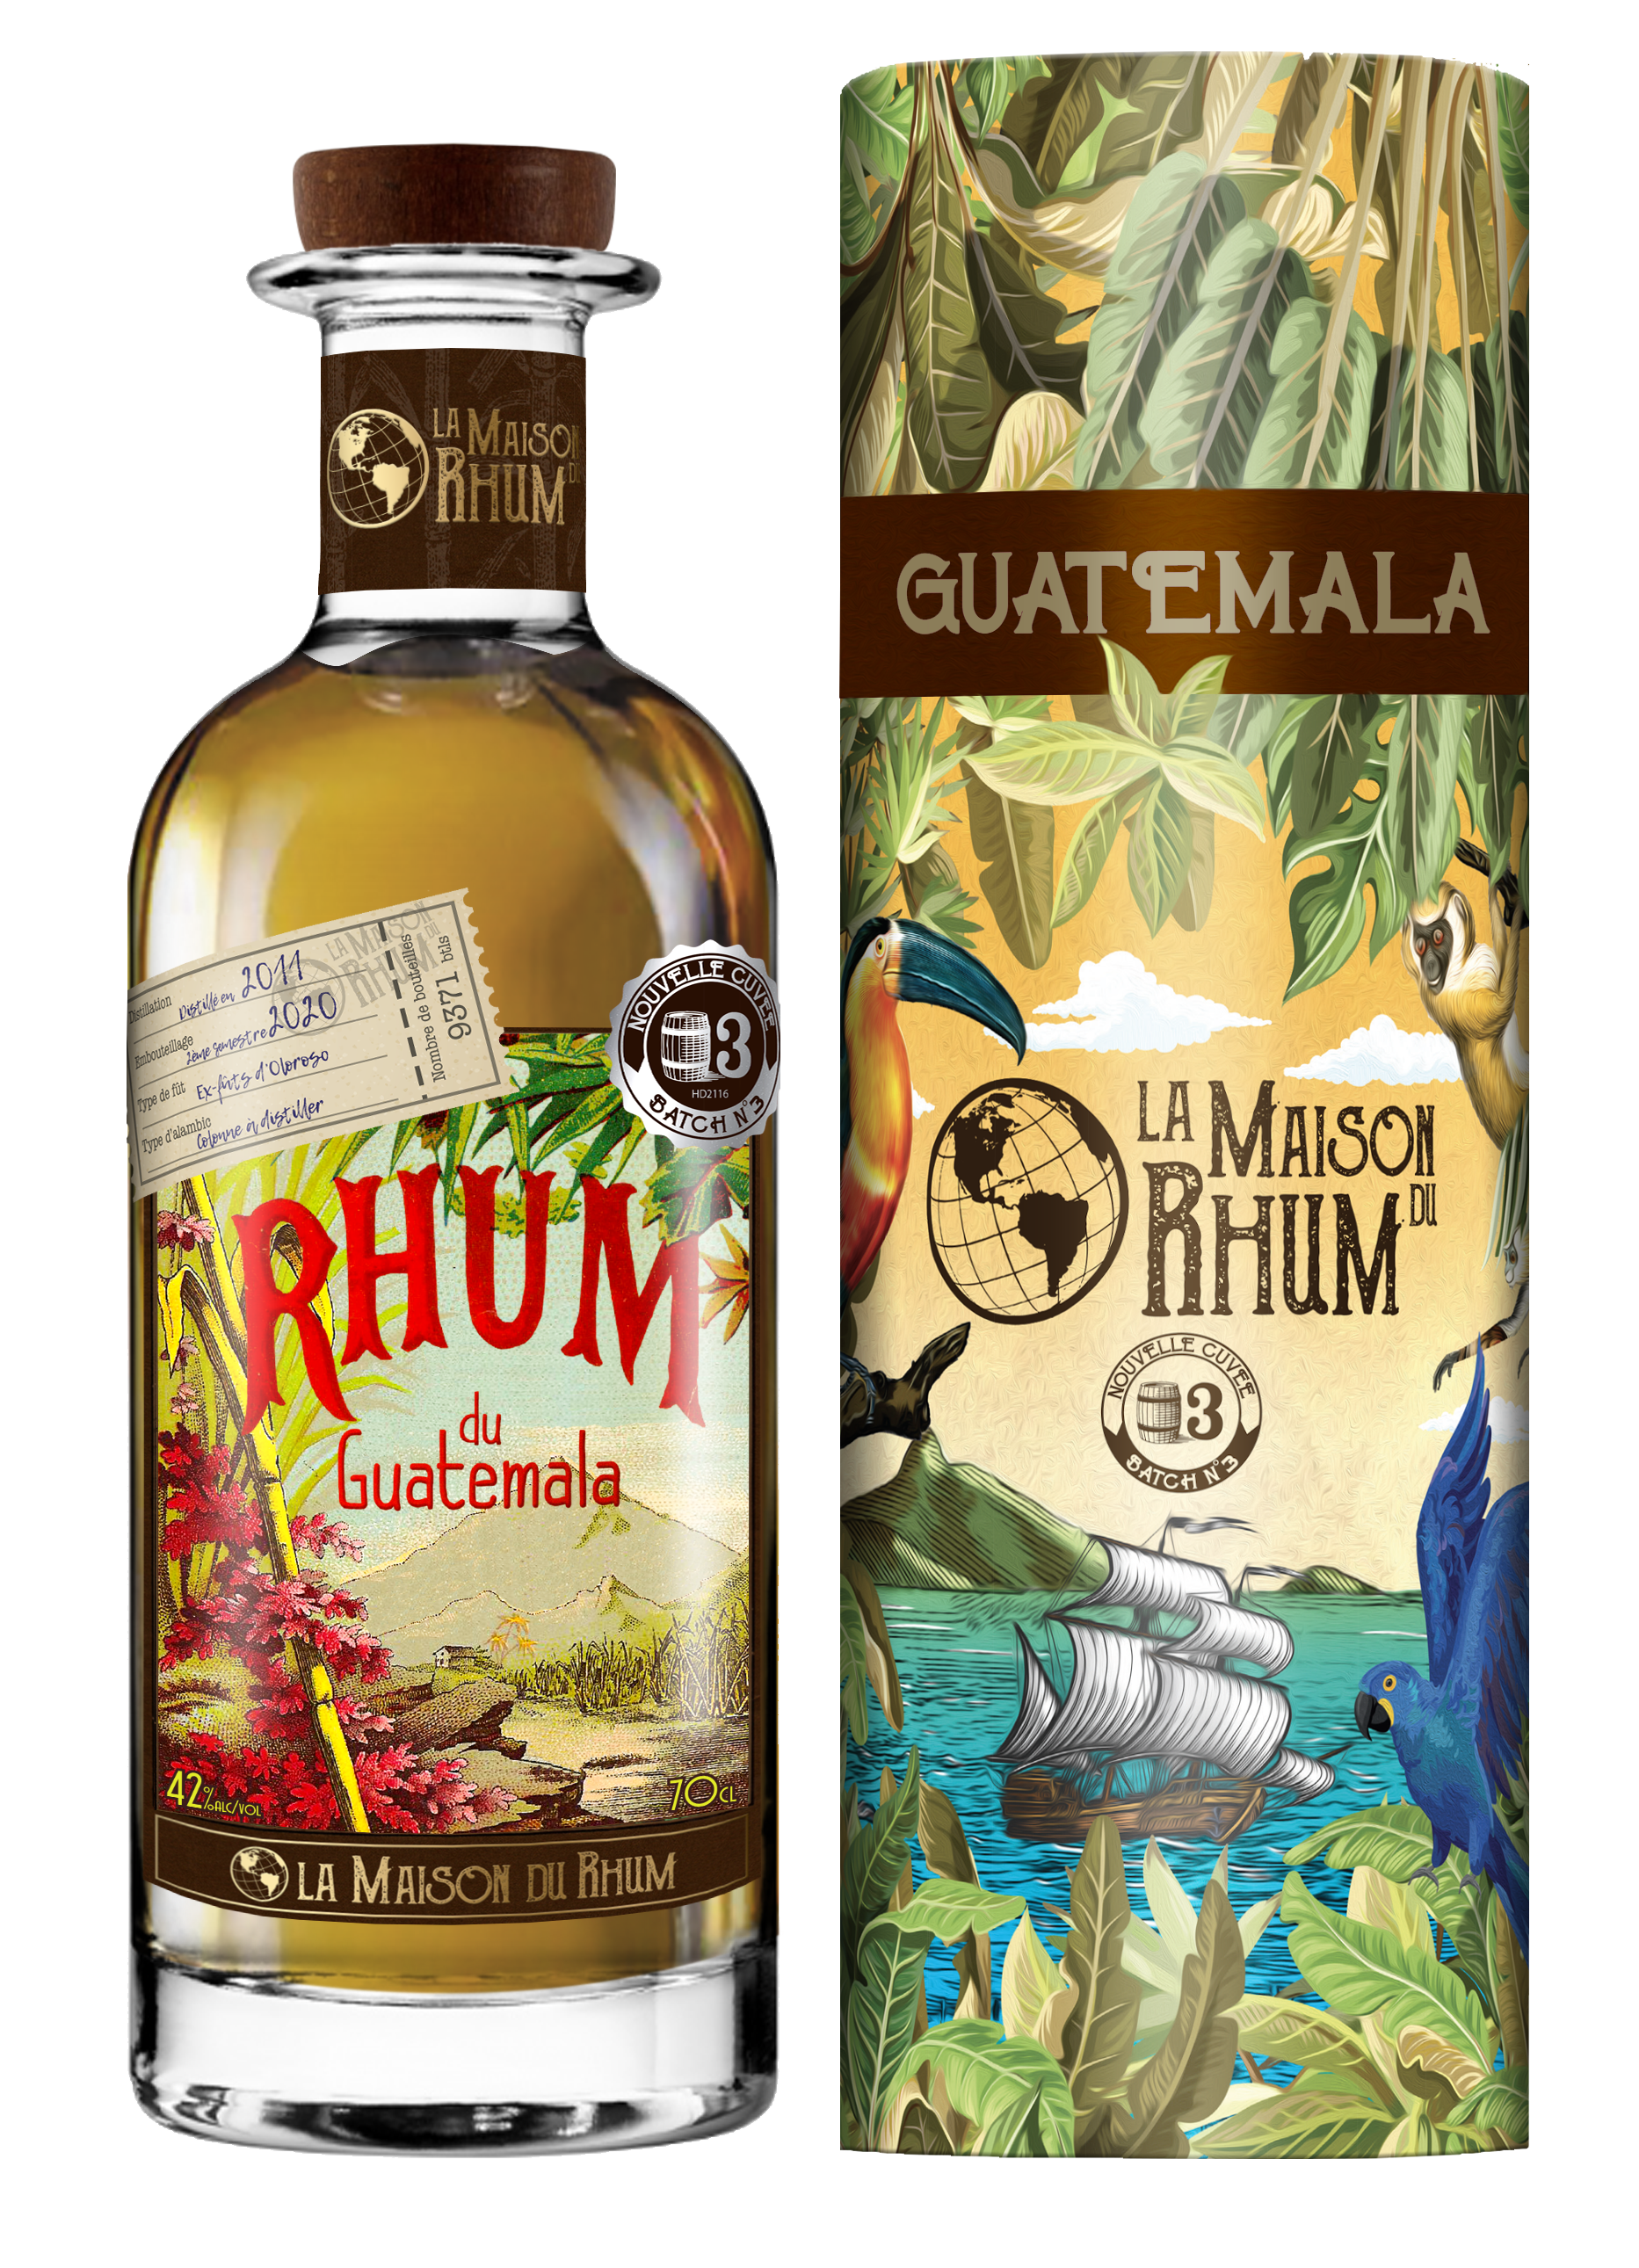 Flasche und Geschenkverpackung La Maison du Rhum Guatemala